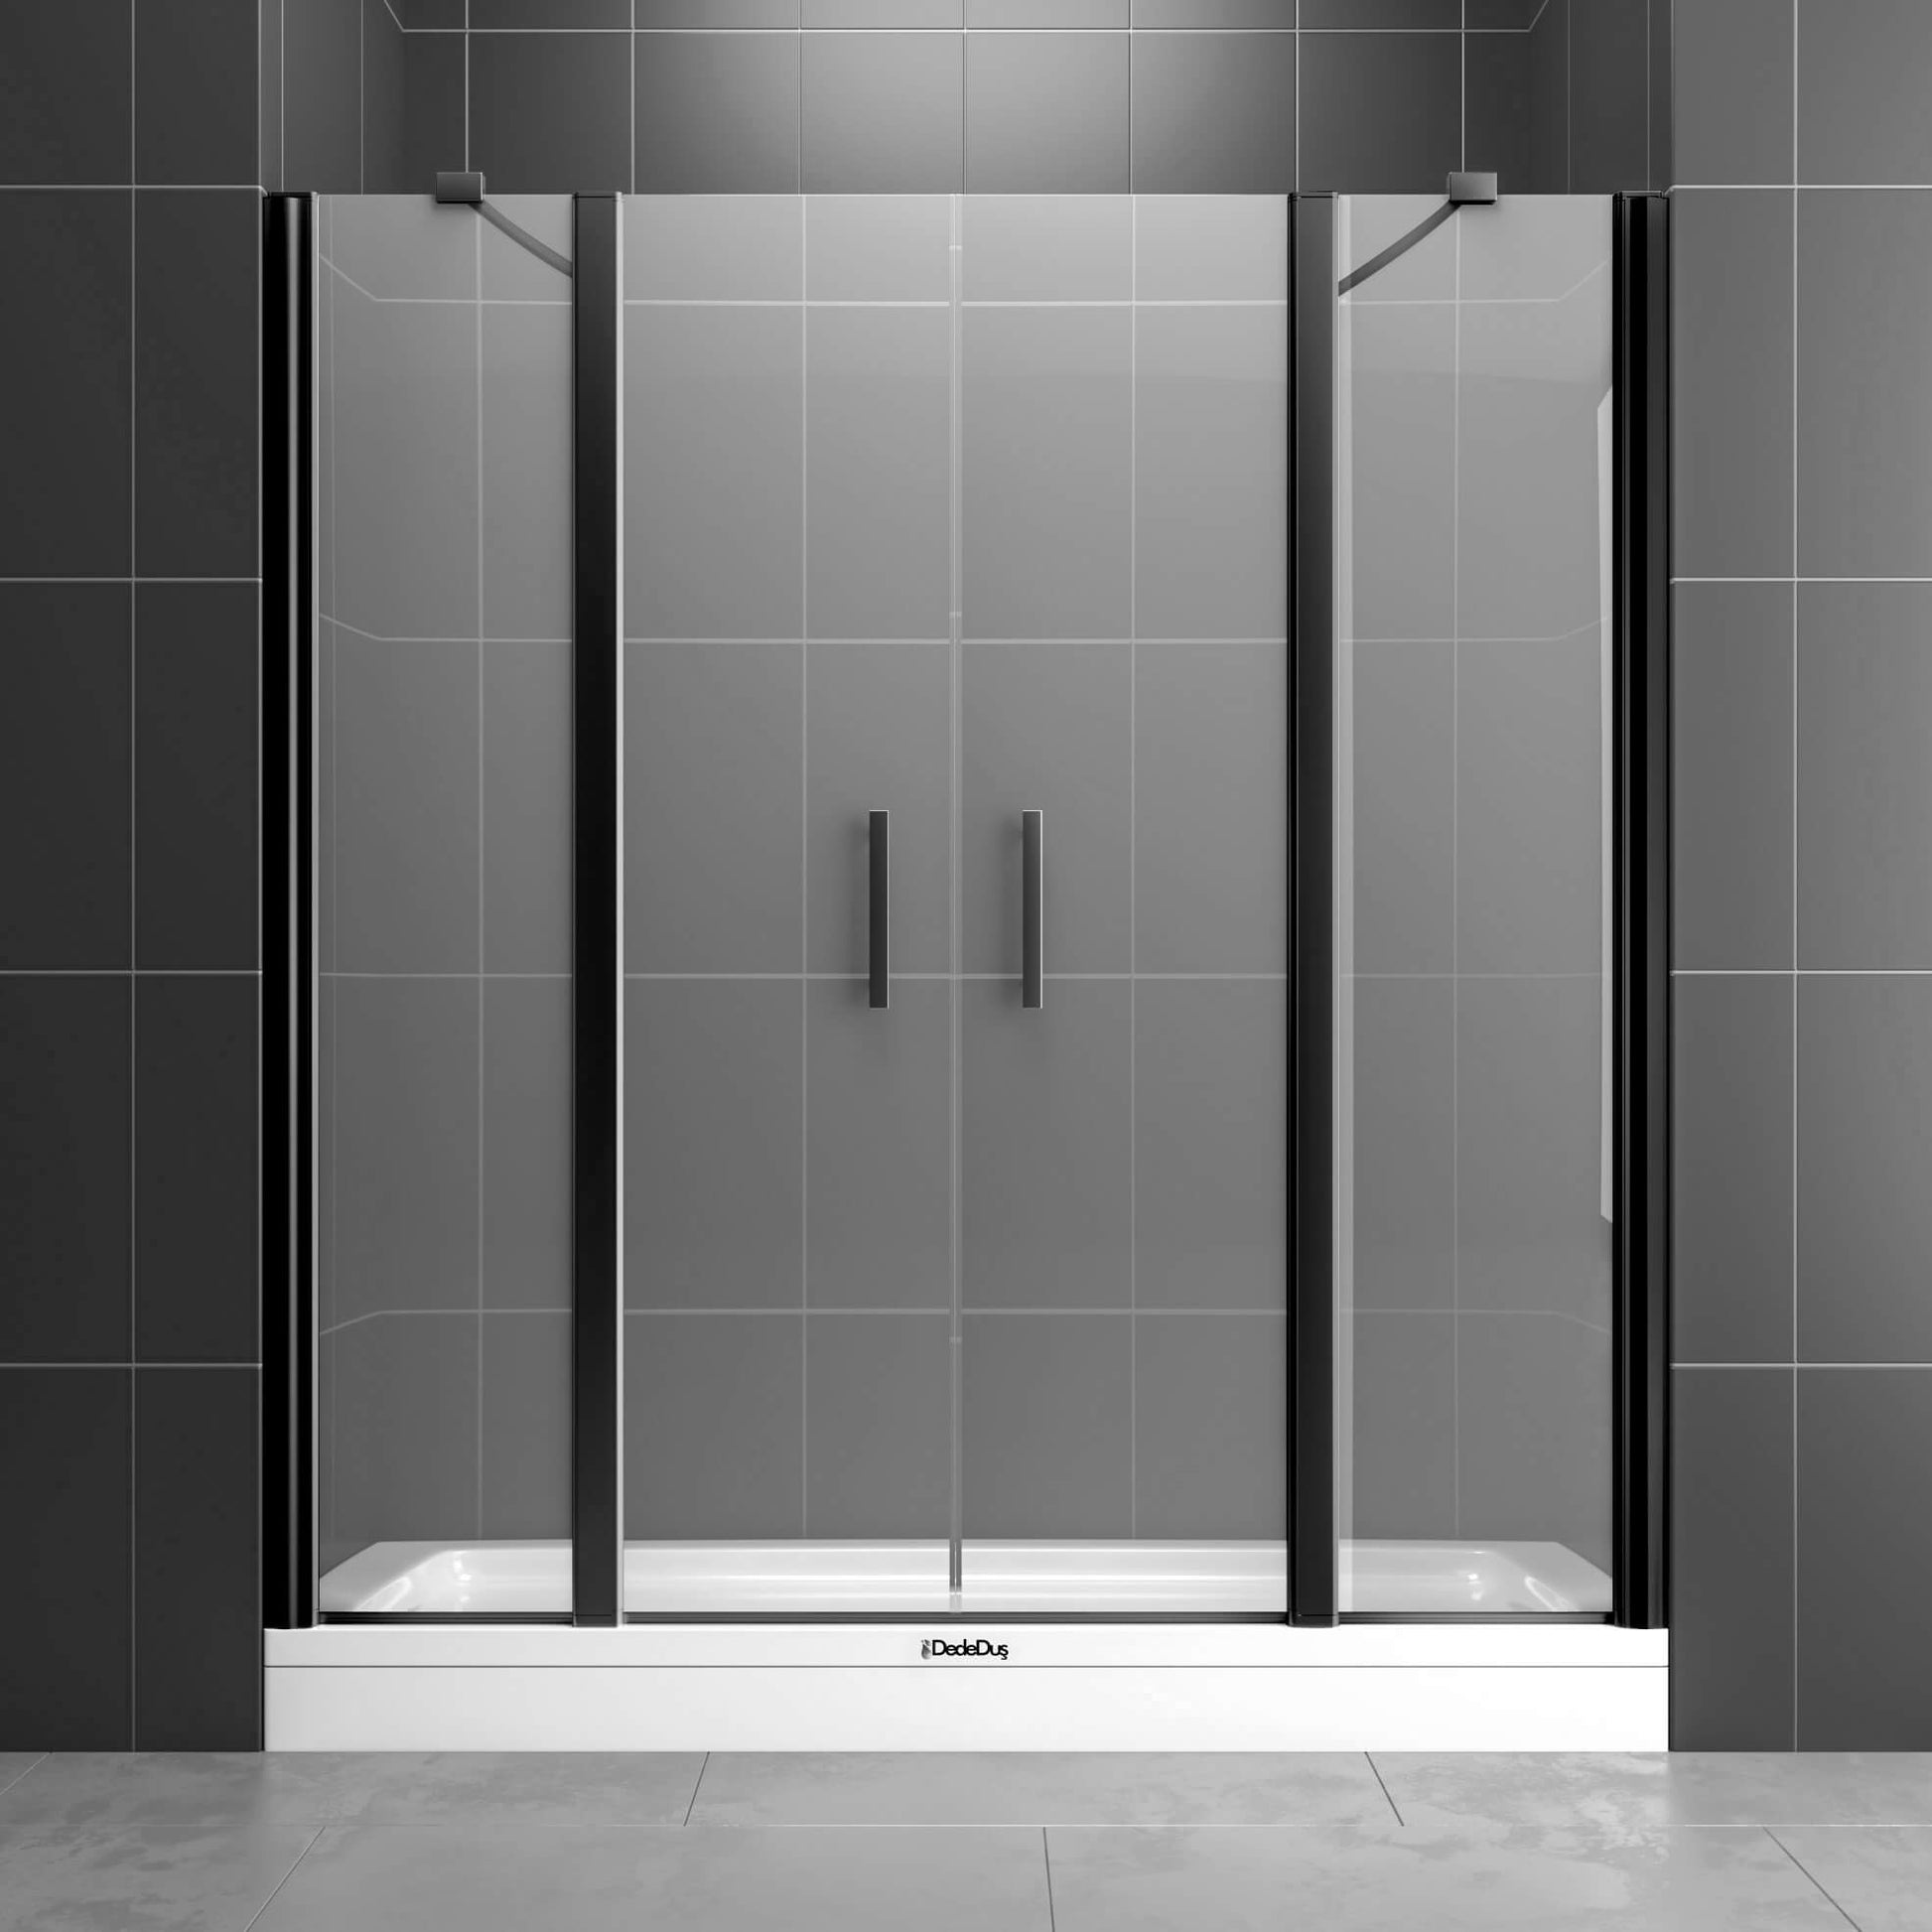 Duvardan duvara 2 sabit, 2 açılır kapı, siyah renk profilli, boy menteşeli duşakabin Çengelköy Dede Duş